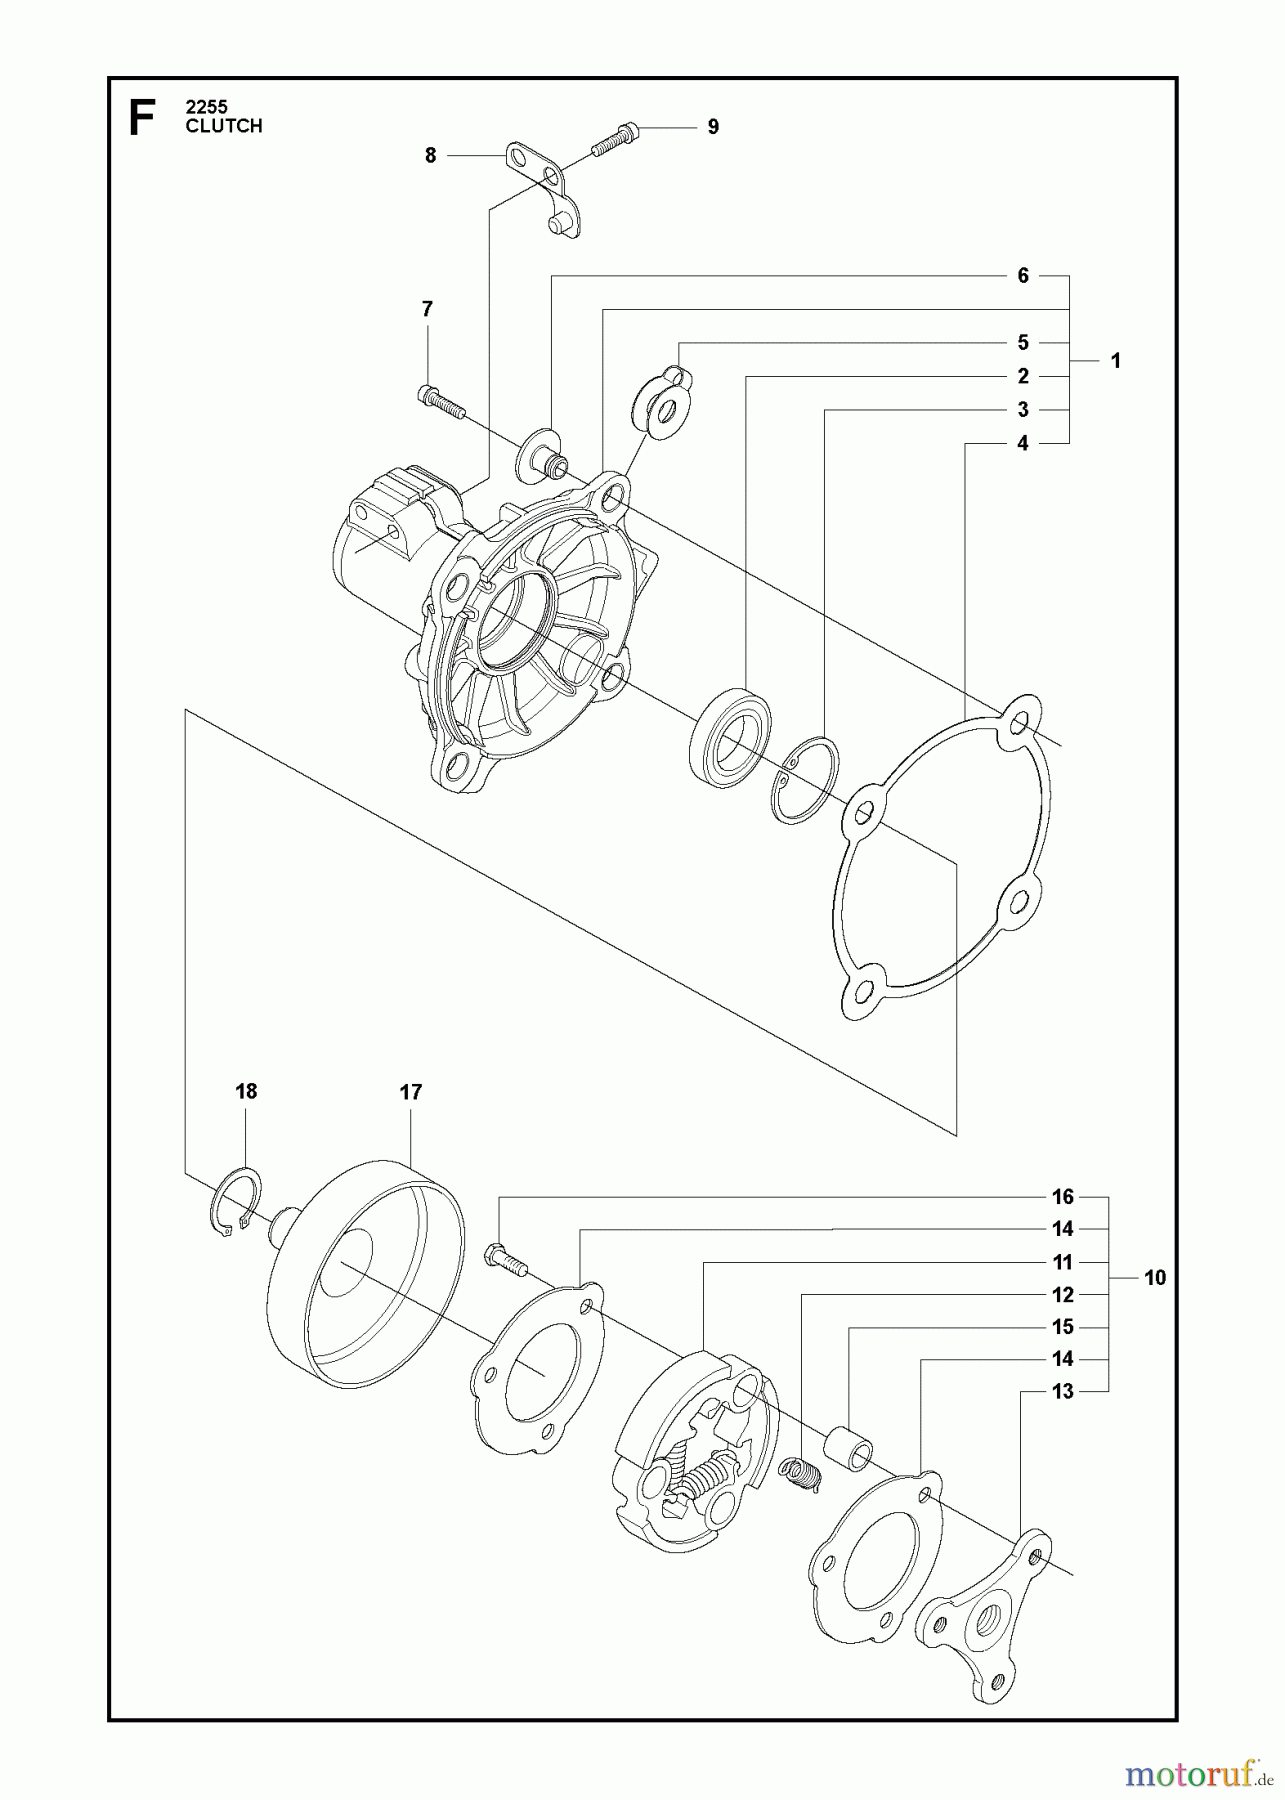  Jonsered Motorsensen, Trimmer FC2255W - Jonsered String/Brush Trimmer (2011-01) CLUTCH